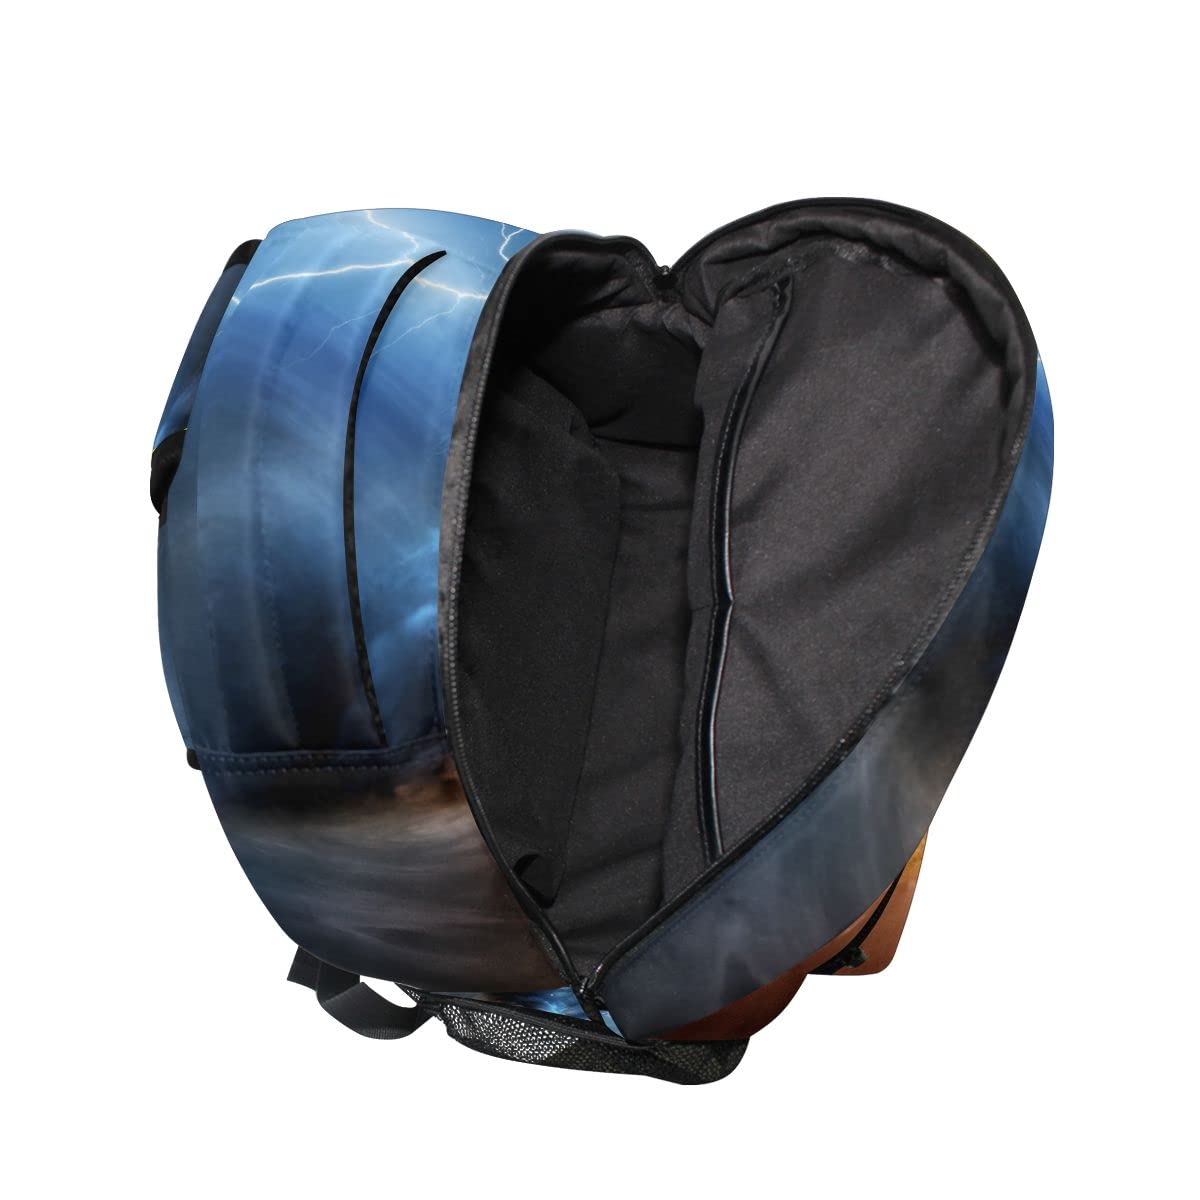 Glaphy Tornado Colorful Backpack School Book Bag Lightweight Laptop Backpack for Boys Girls Kids